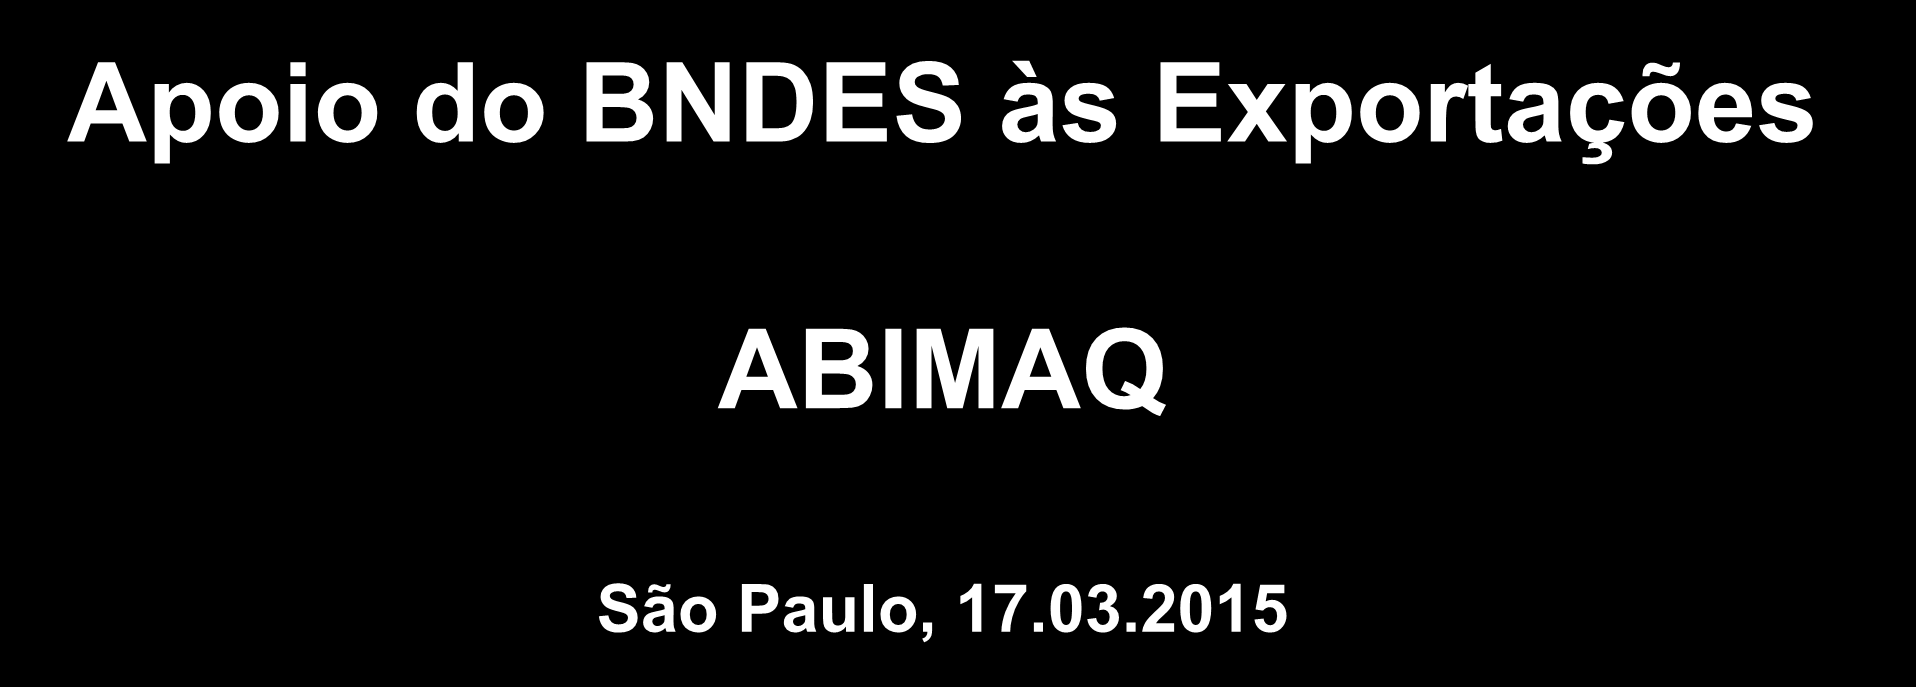 Apoio do BNDES às Exportações ABIMAQ São Paulo, 17.03.